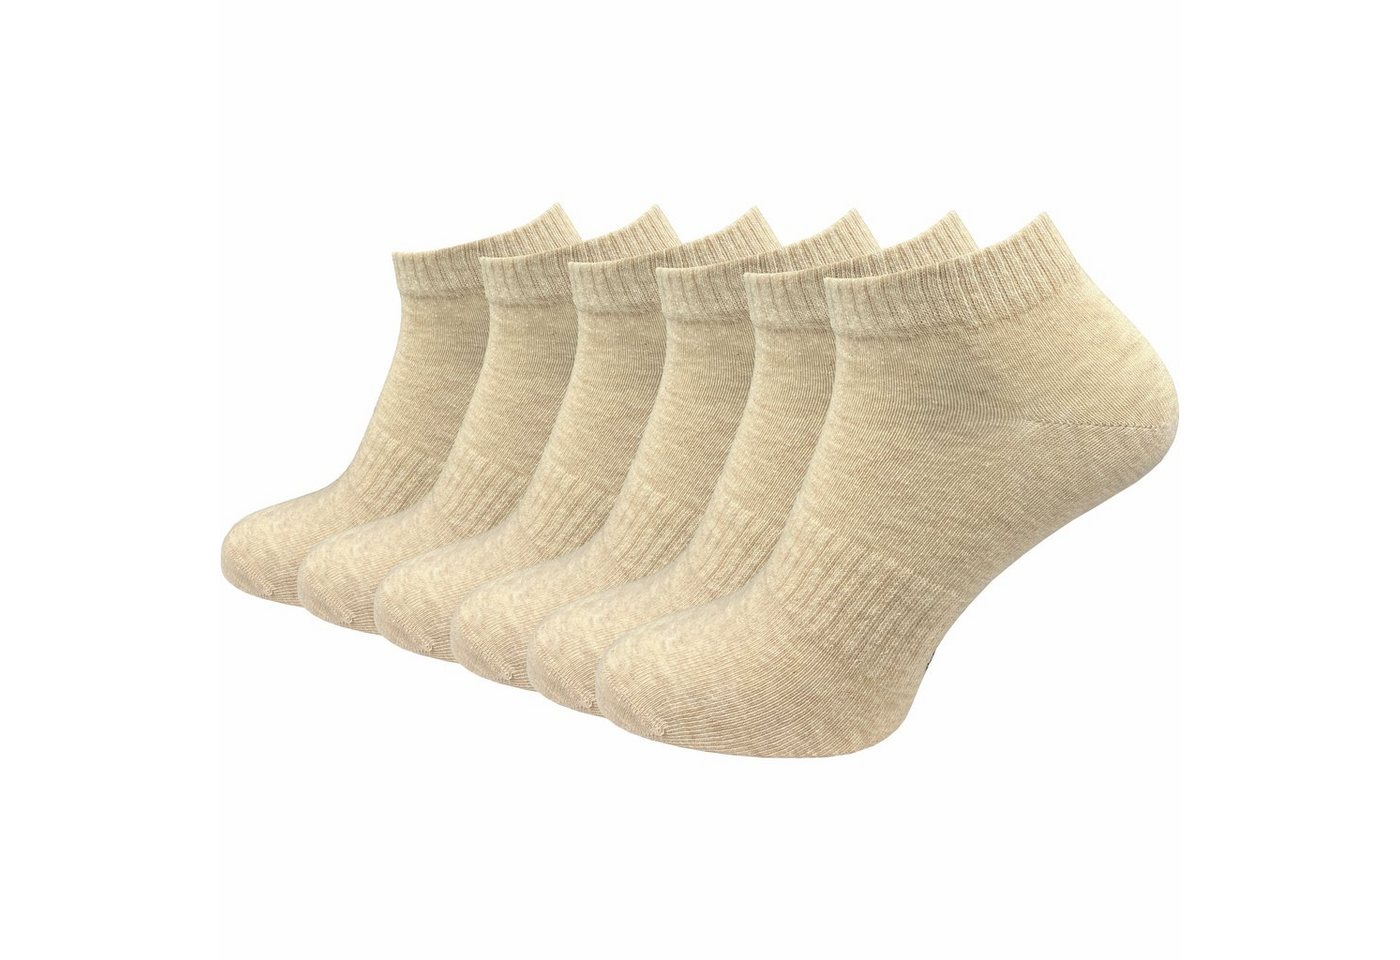 GAWILO Kurzsocken für Damen und Herren - Quartersocken in weiß, schwarz und grau (6 Paar) Kein Rutschen dank Rippbund - Etwas länger als Sneaker Socken von GAWILO